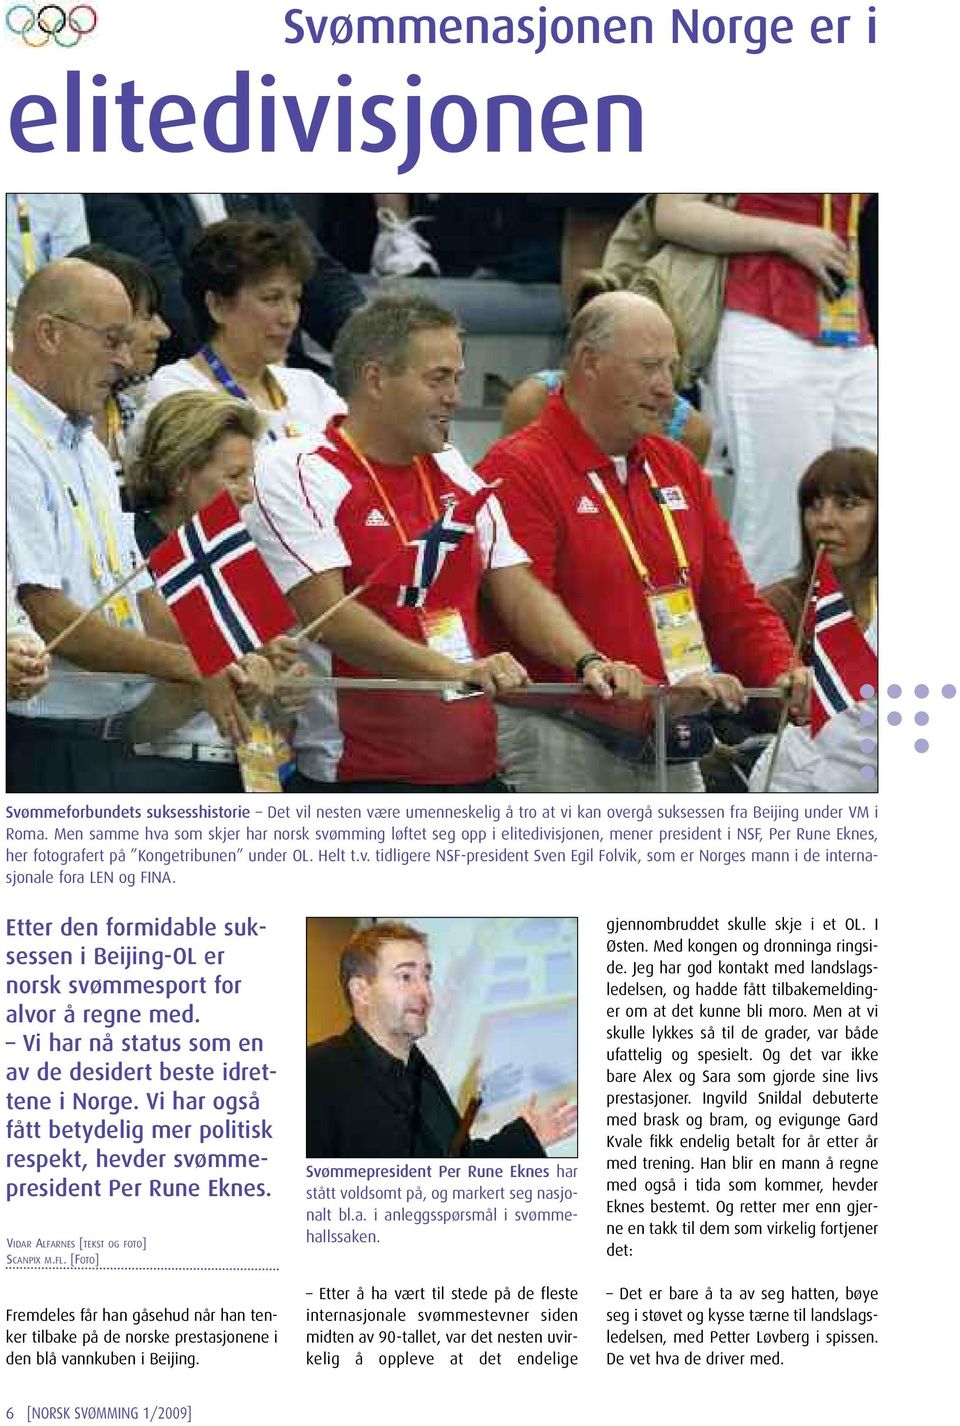 Etter den formidable suksessen i Beijing-OL er norsk svømmesport for alvor å regne med. Vi har nå status som en av de desidert beste idrettene i Norge.